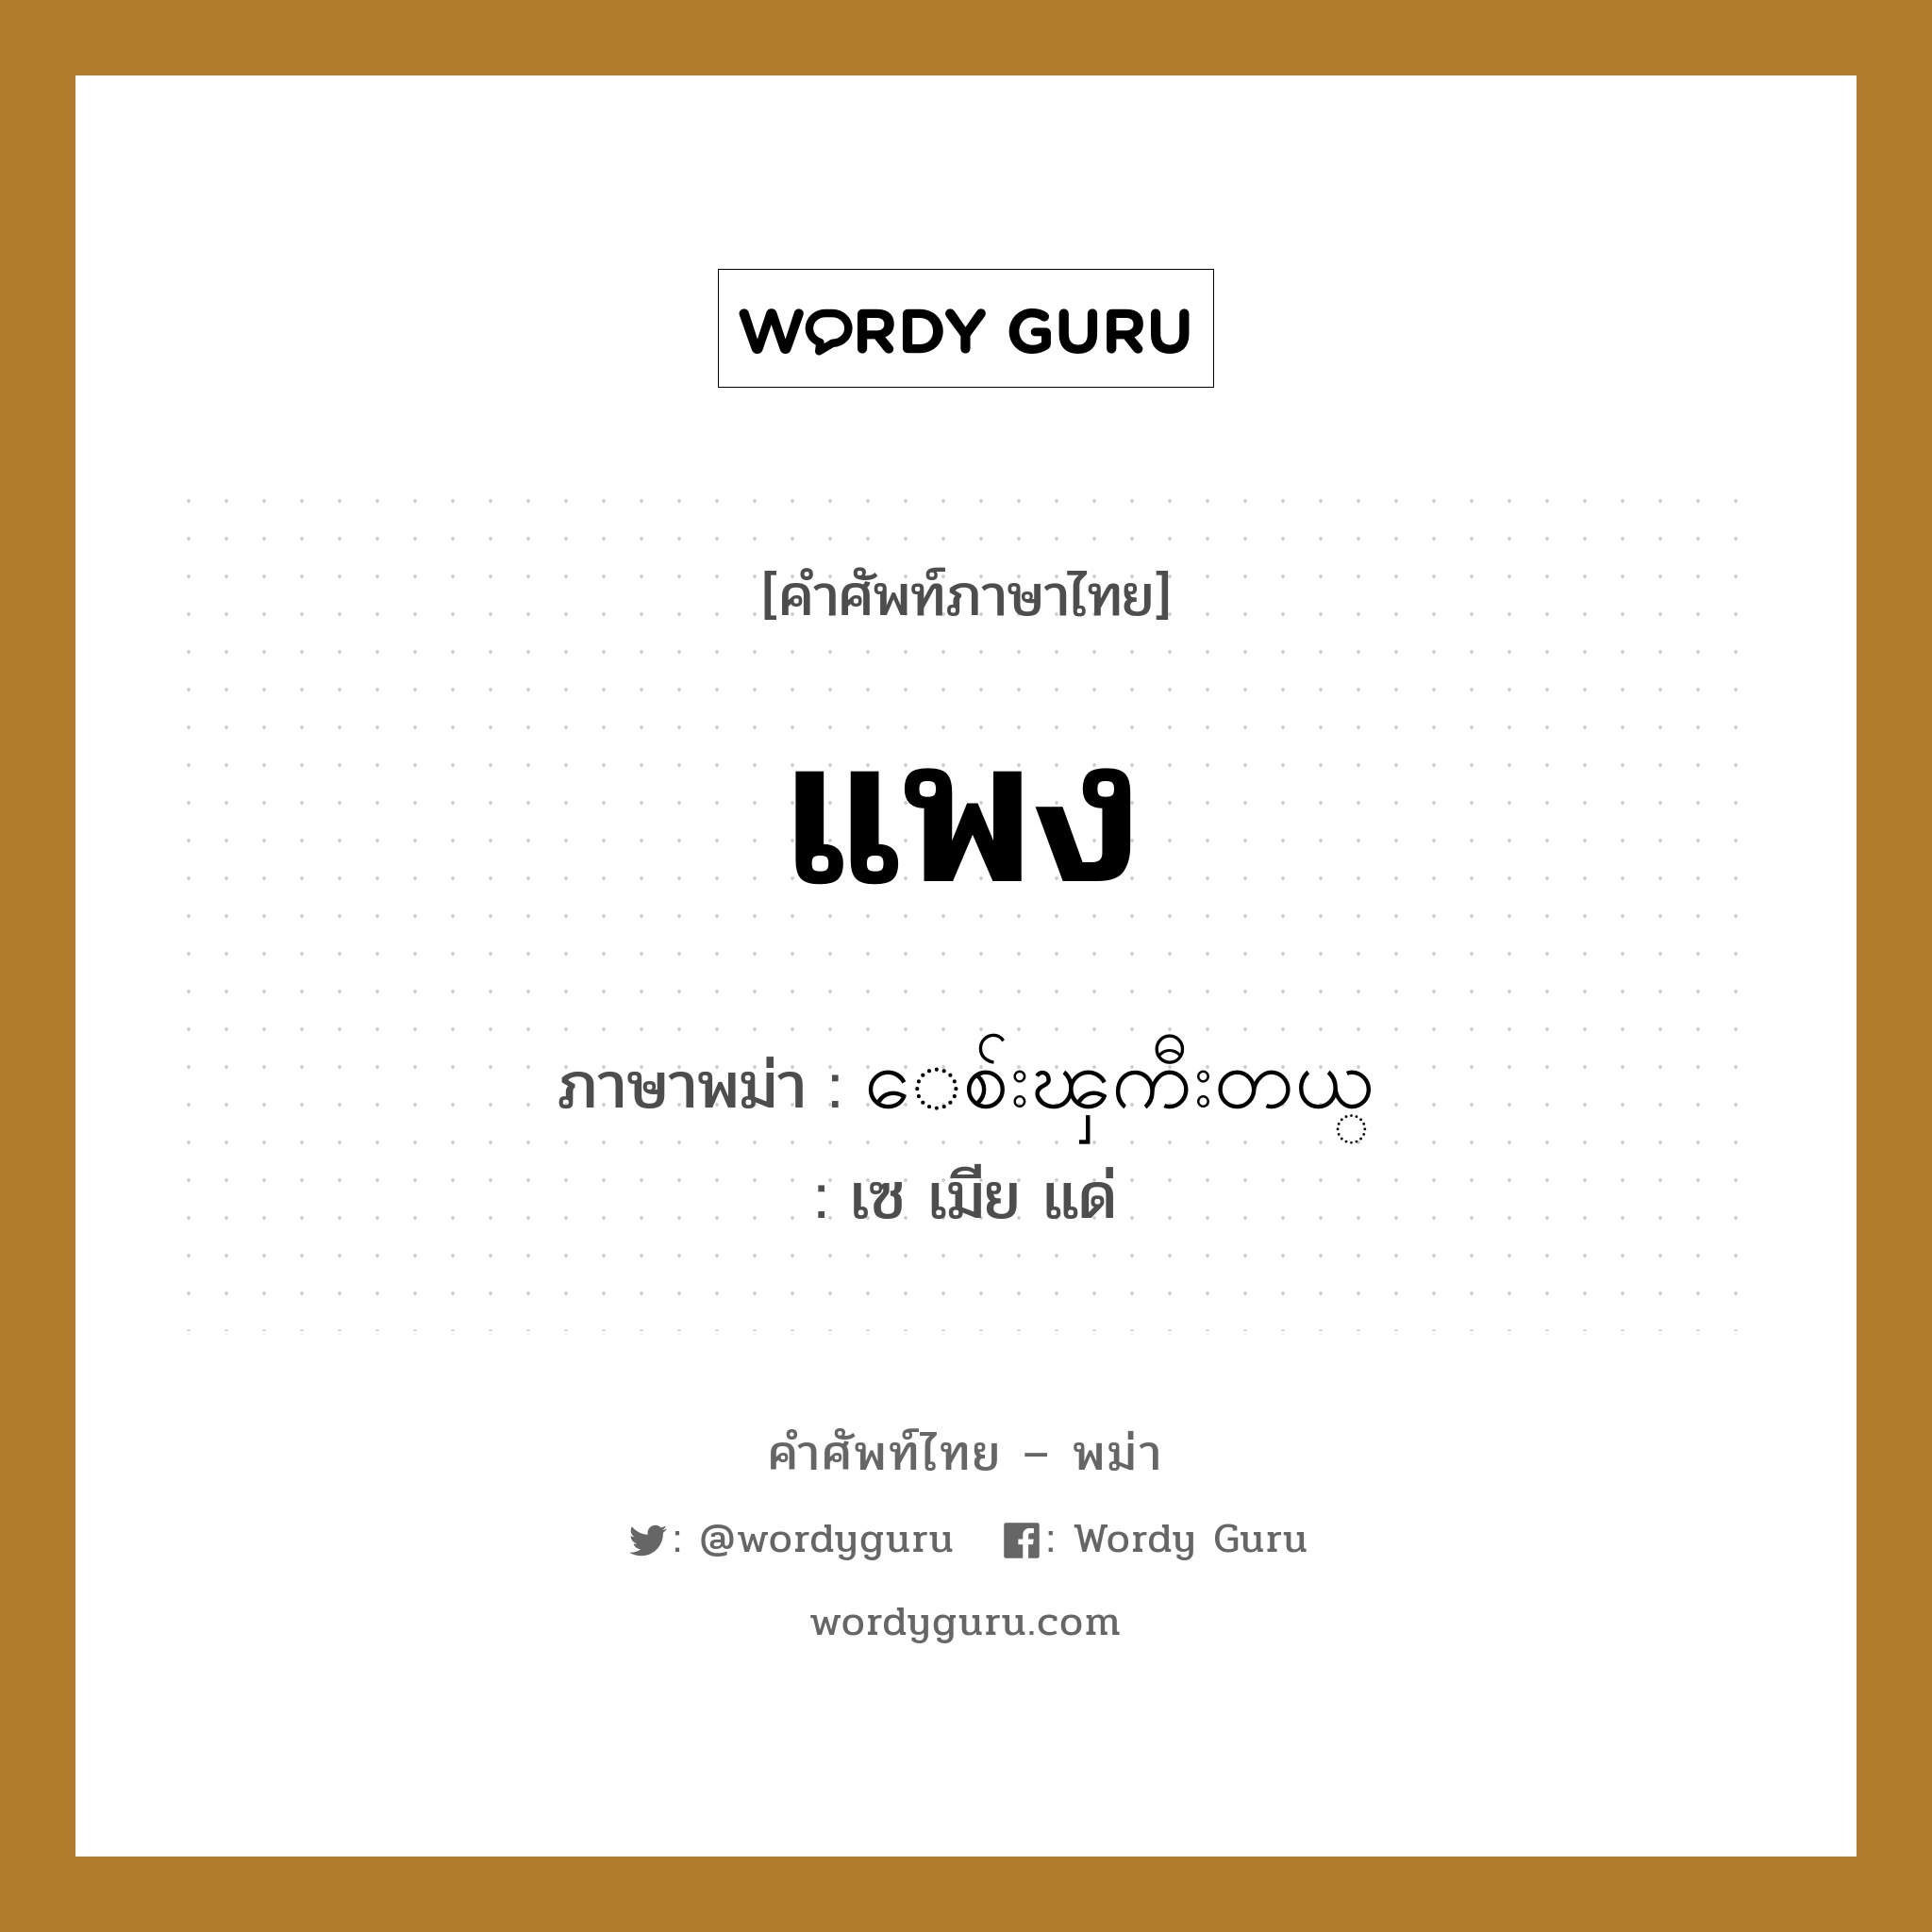 ေစ်းၾကီးတယ္ ภาษาไทย?, คำศัพท์ภาษาไทย - พม่า ေစ်းၾကီးတယ္ ภาษาพม่า แพง หมวด บทสนทนาการซื้อขาย เซ เมีย แด่ หมวด บทสนทนาการซื้อขาย